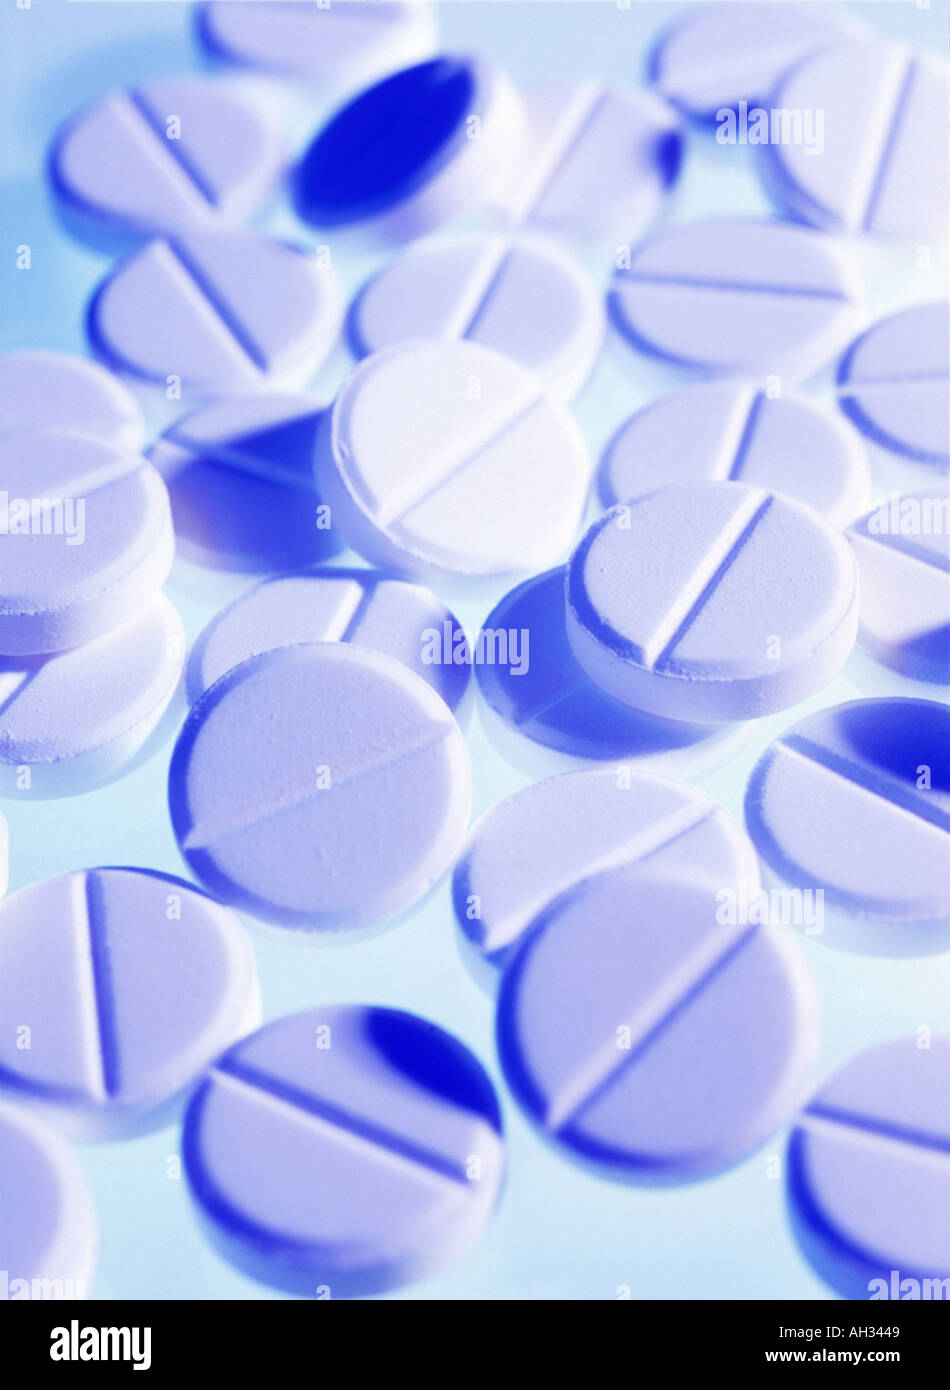 Aspirin Tabletten Aspirin Acetylsa Säure ist eine nicht verschreibungspflichtige Medikament zur allgemeinen Schmerzen wie Kopfschmerzen zu lindern Stockfoto